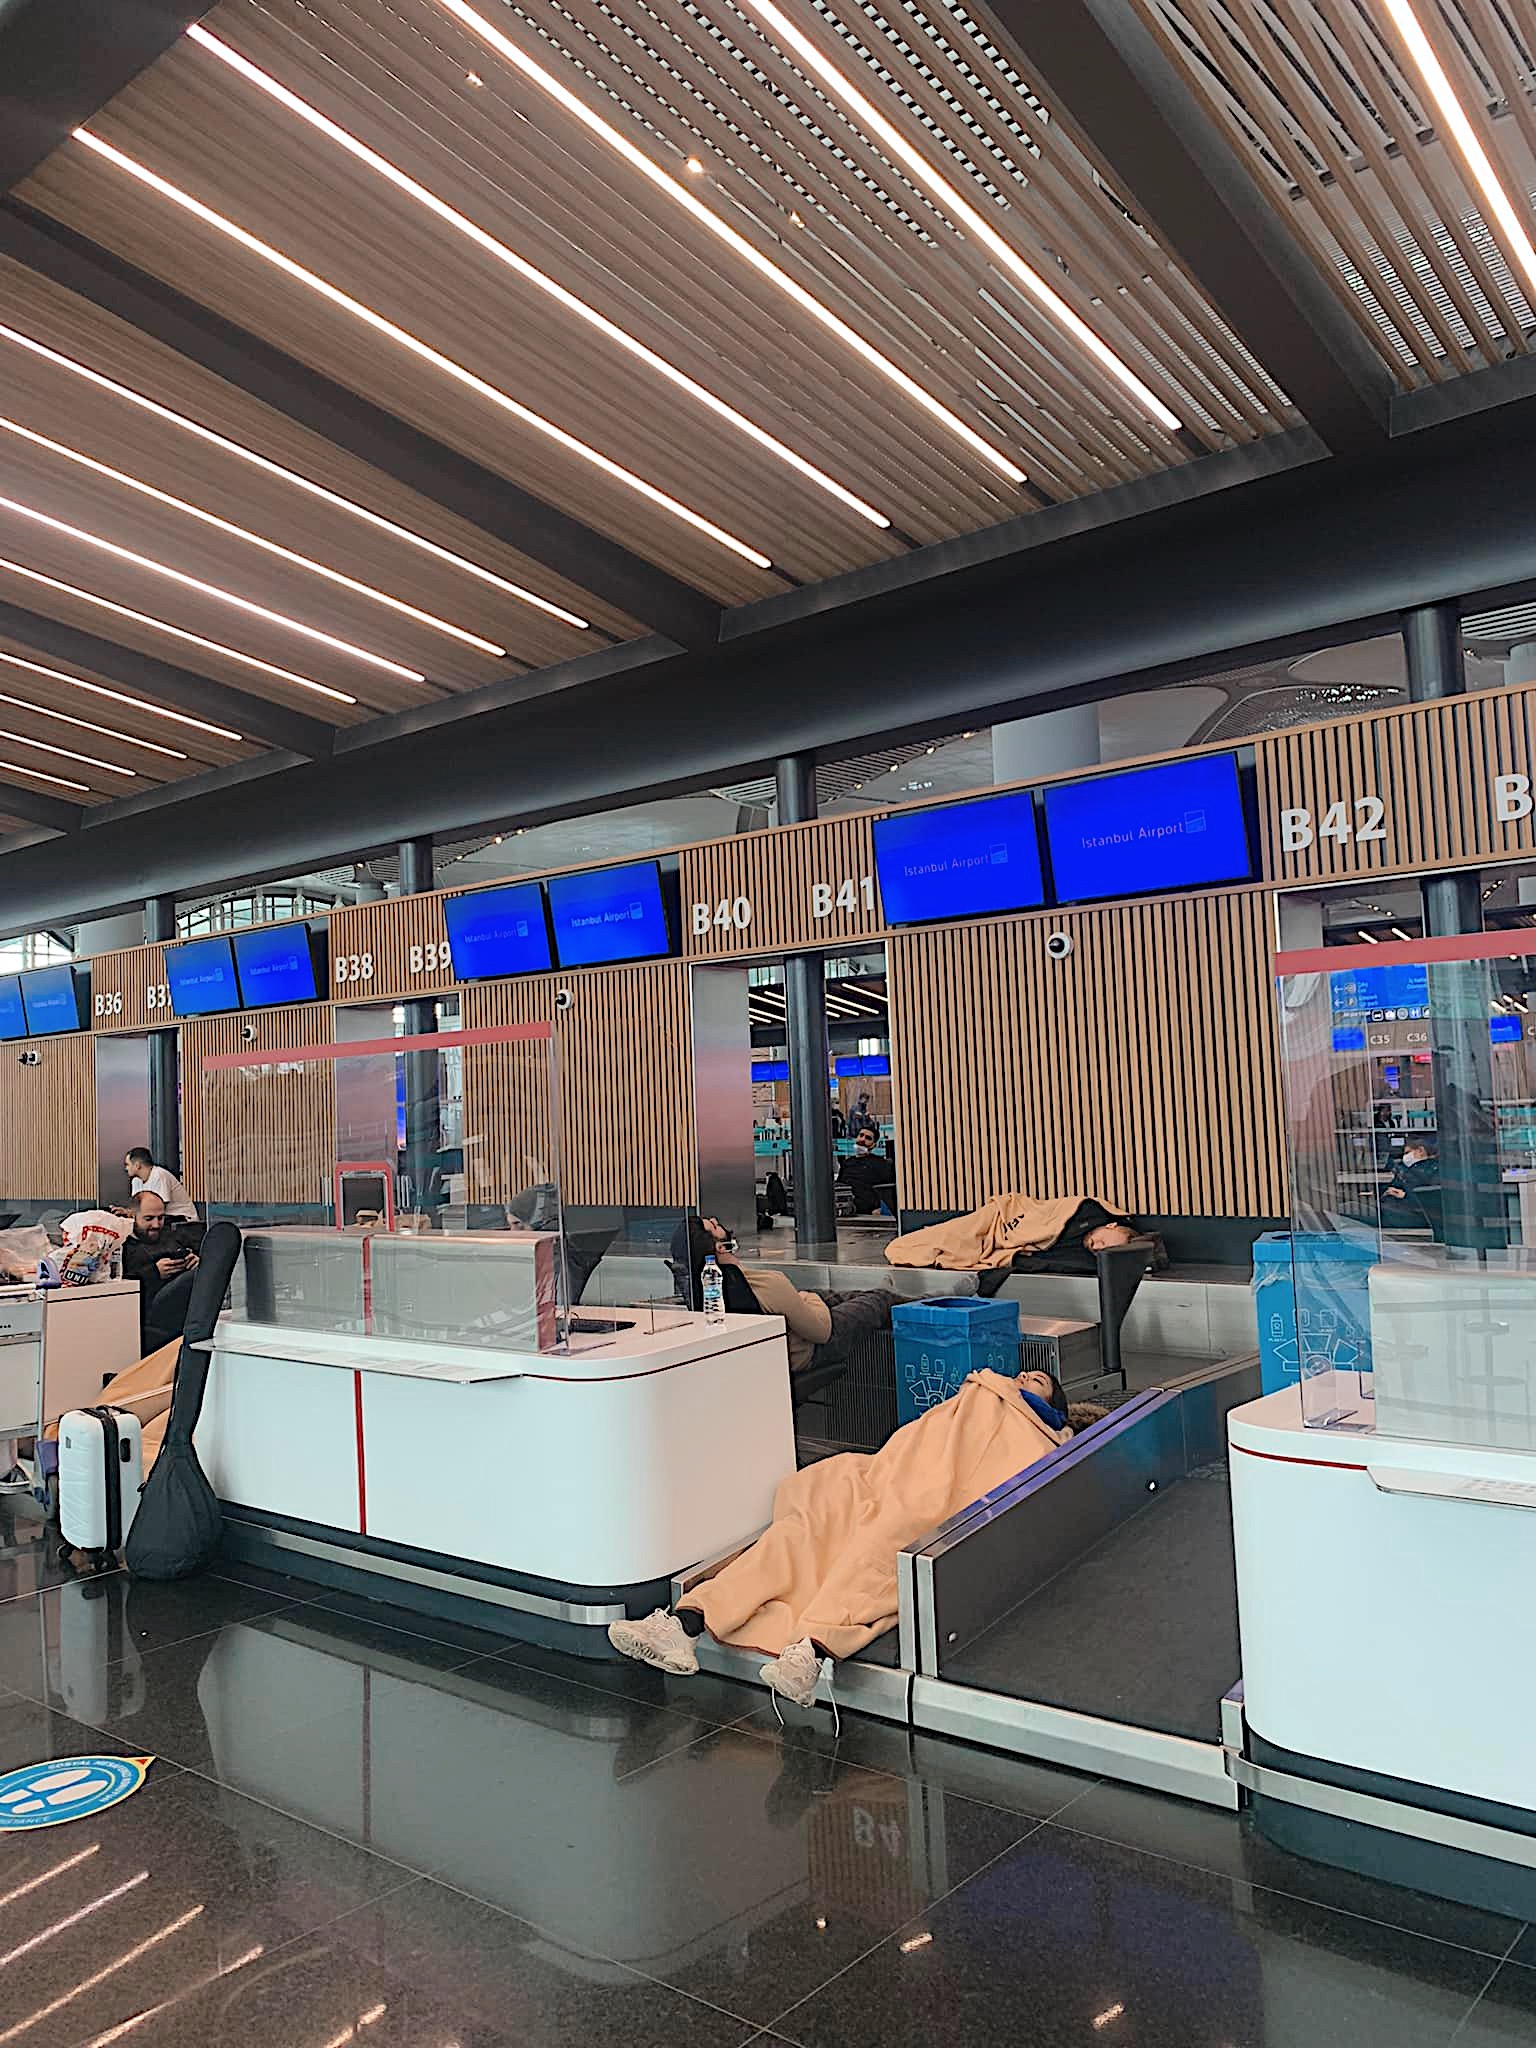 Путешественники со всего мира спали в аэропорту прямо на багажных лентах